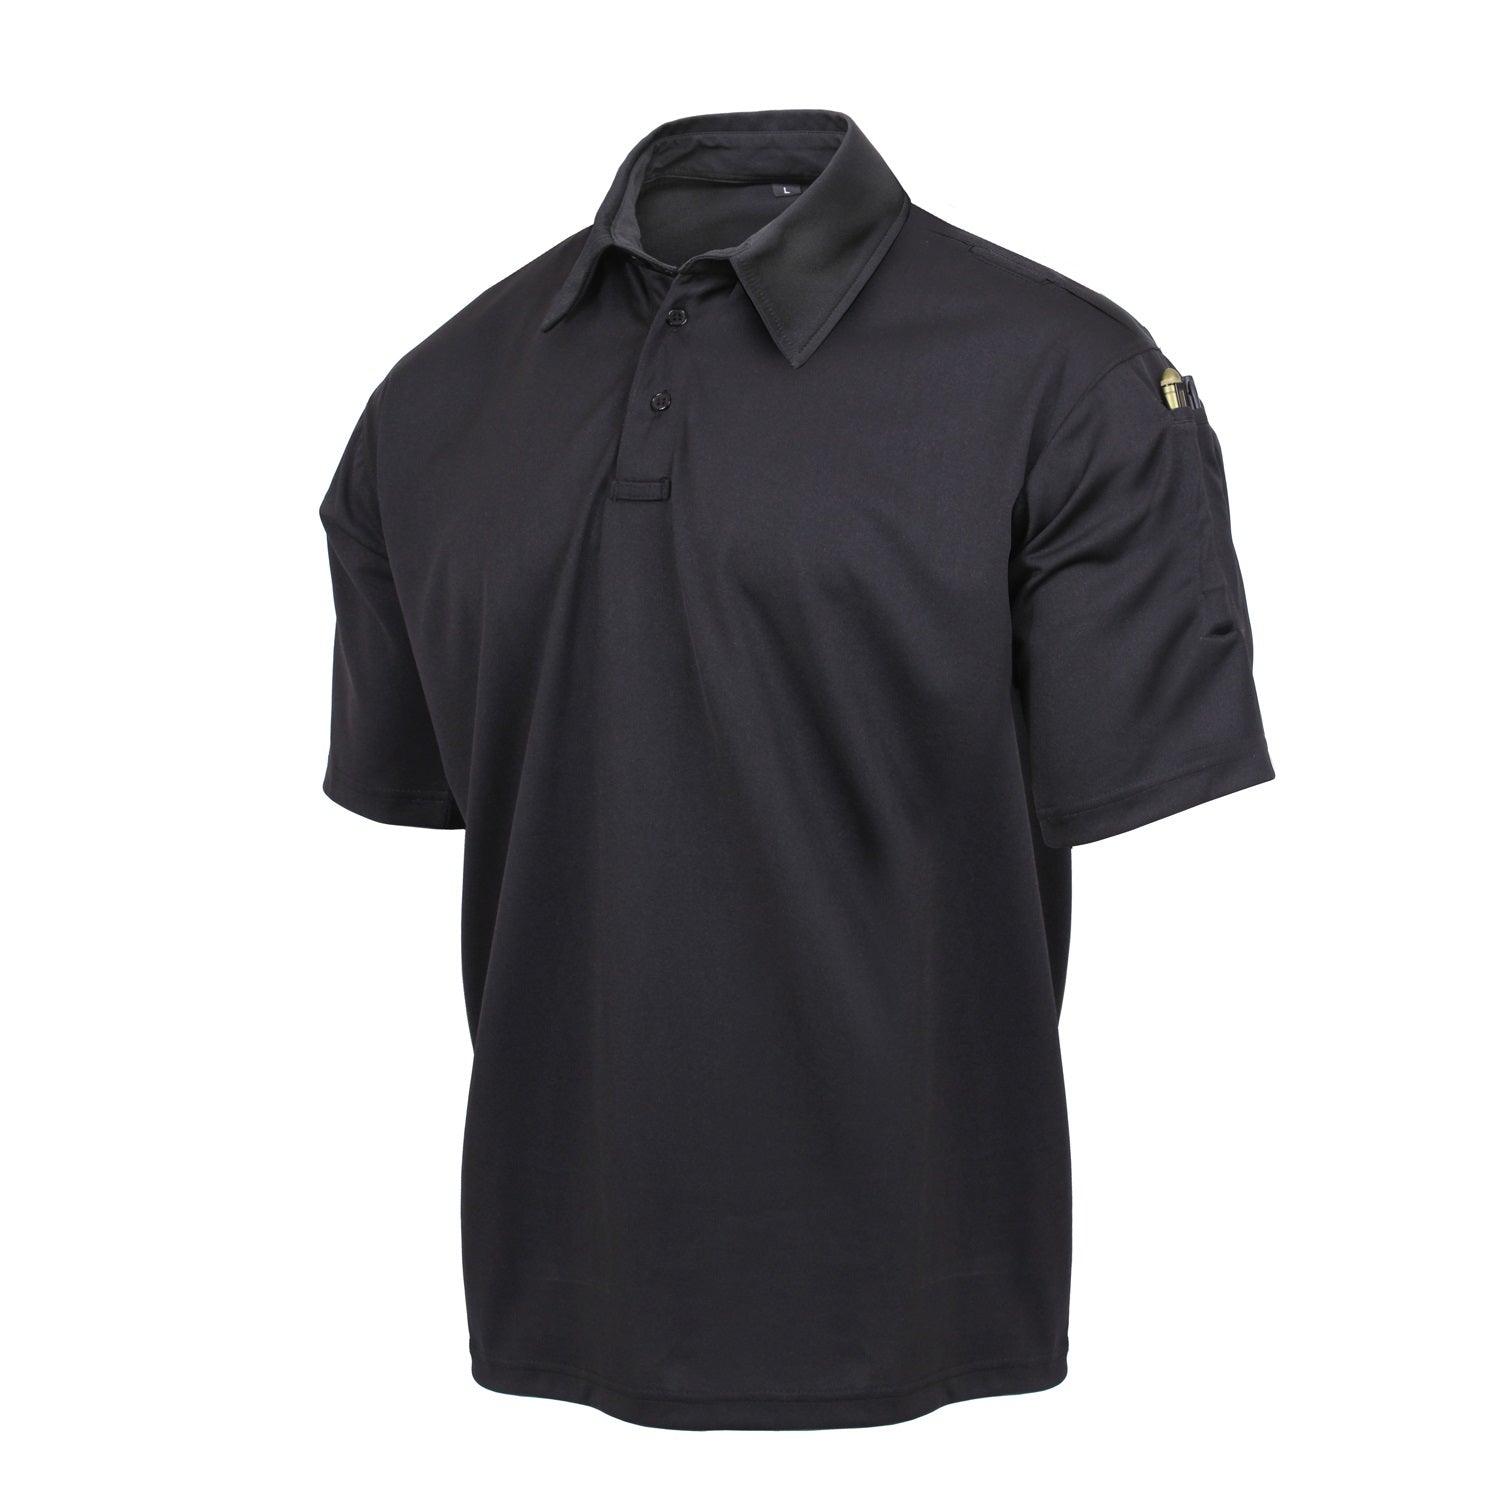 Rothco Tactical Performance Polo Shirt Black